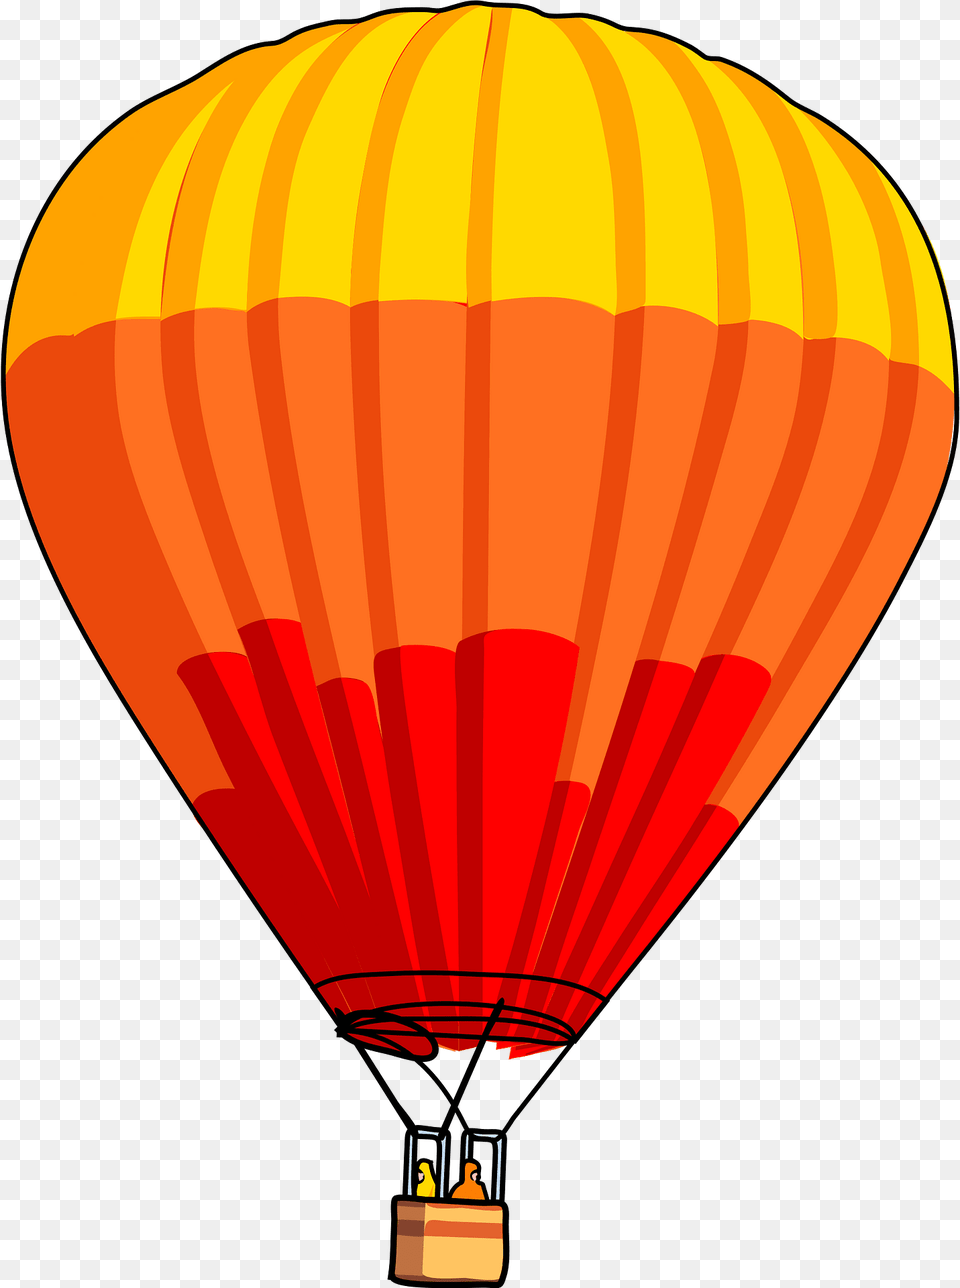 Balloon Clipart, Aircraft, Hot Air Balloon, Transportation, Vehicle Png